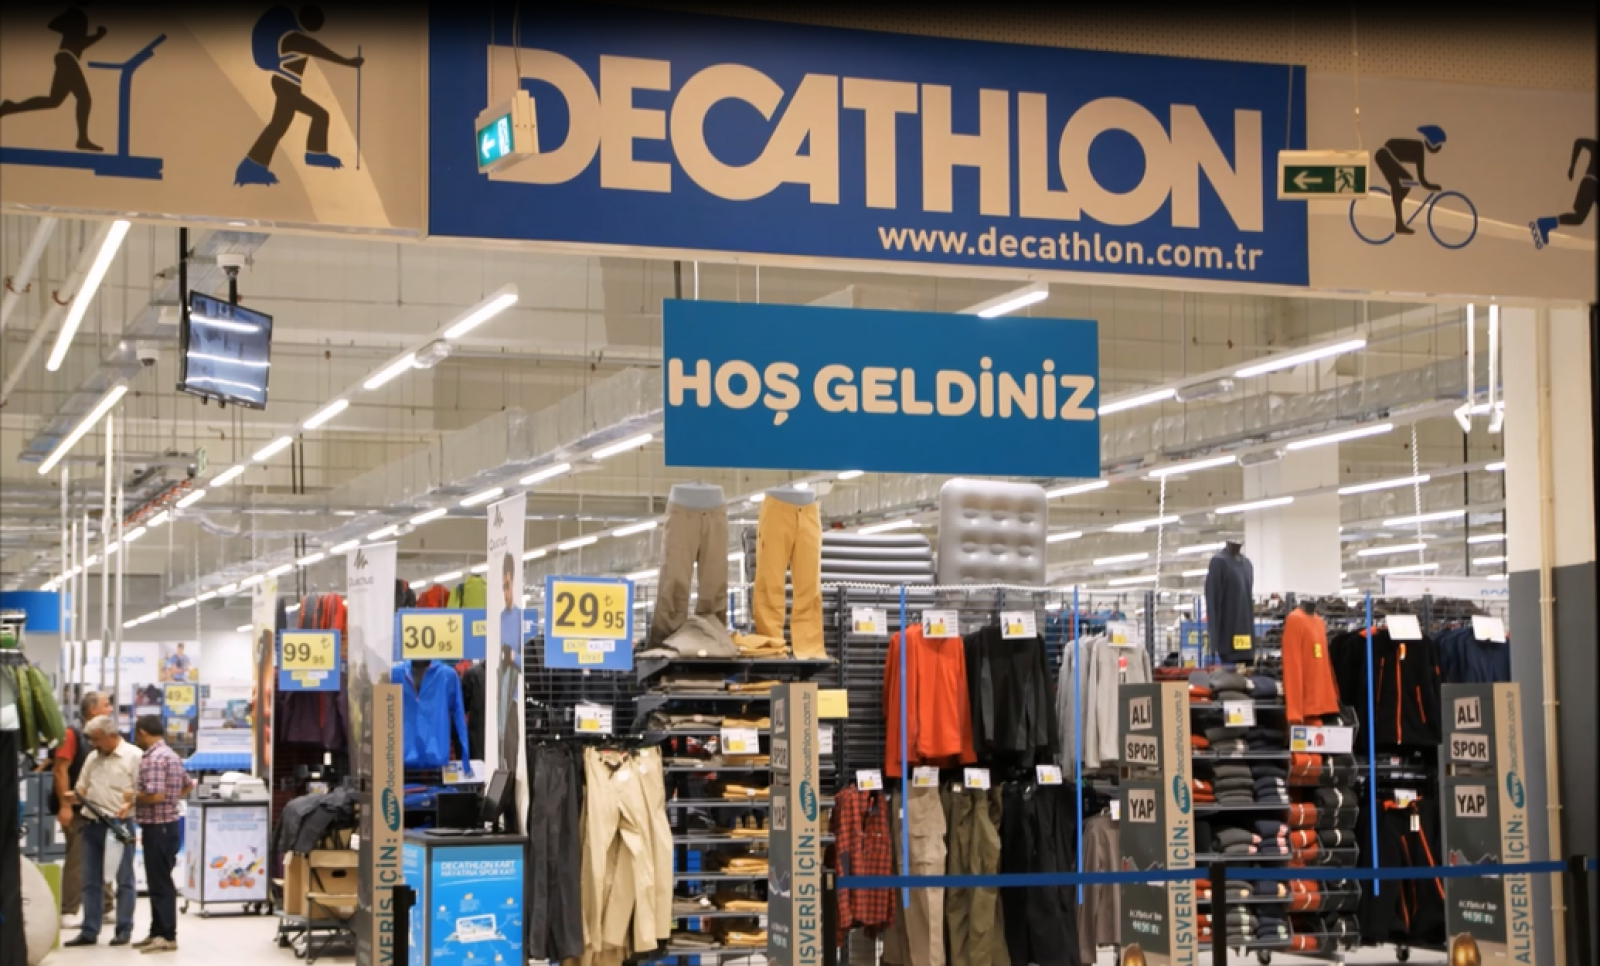 Decathlon Mağazaları